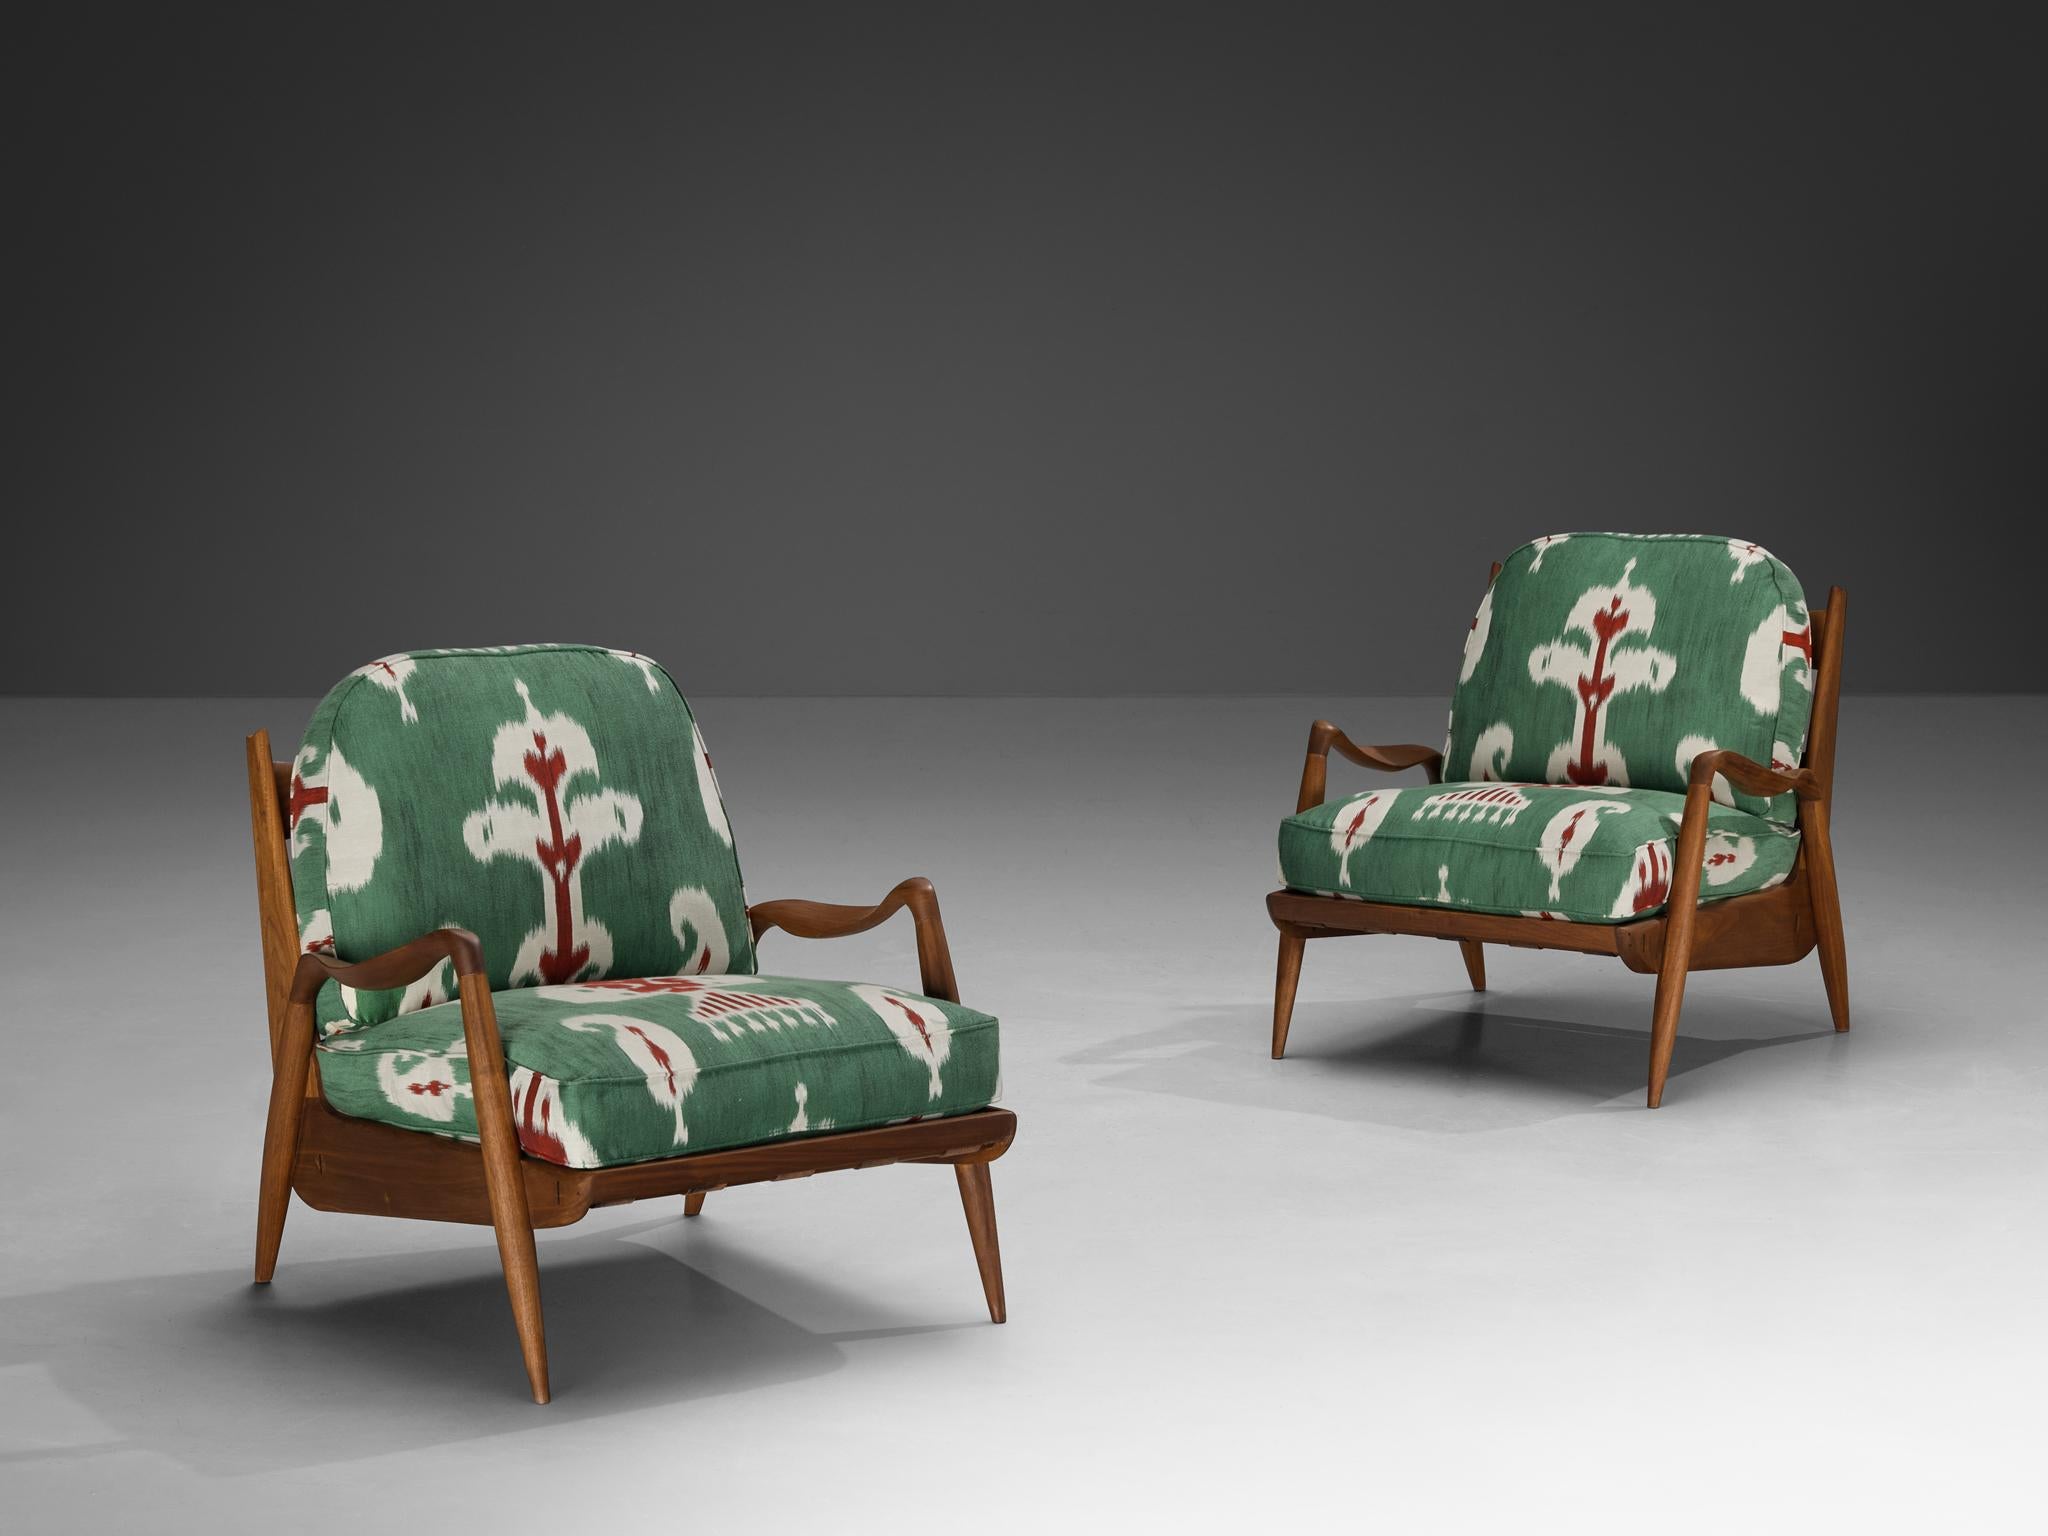 Philip Lloyds Powell, chaises longues 'New Hope', noyer, reupholstered in 'Astara' Vert by Pierre Frey, États-Unis, années 1960

Souvent décrit comme un 